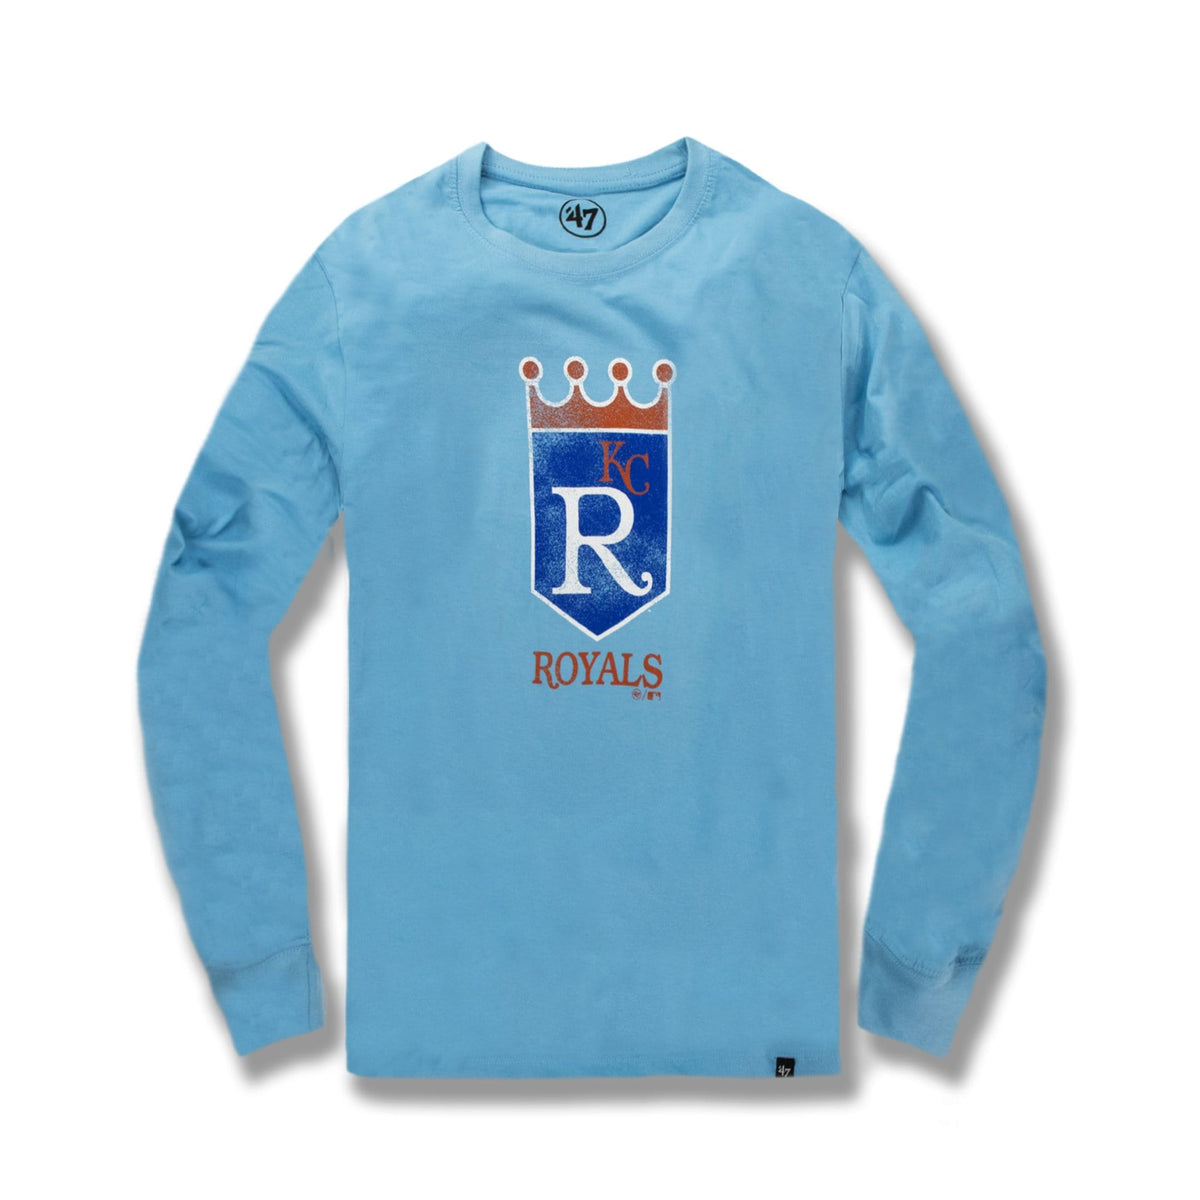 royals kc shirt